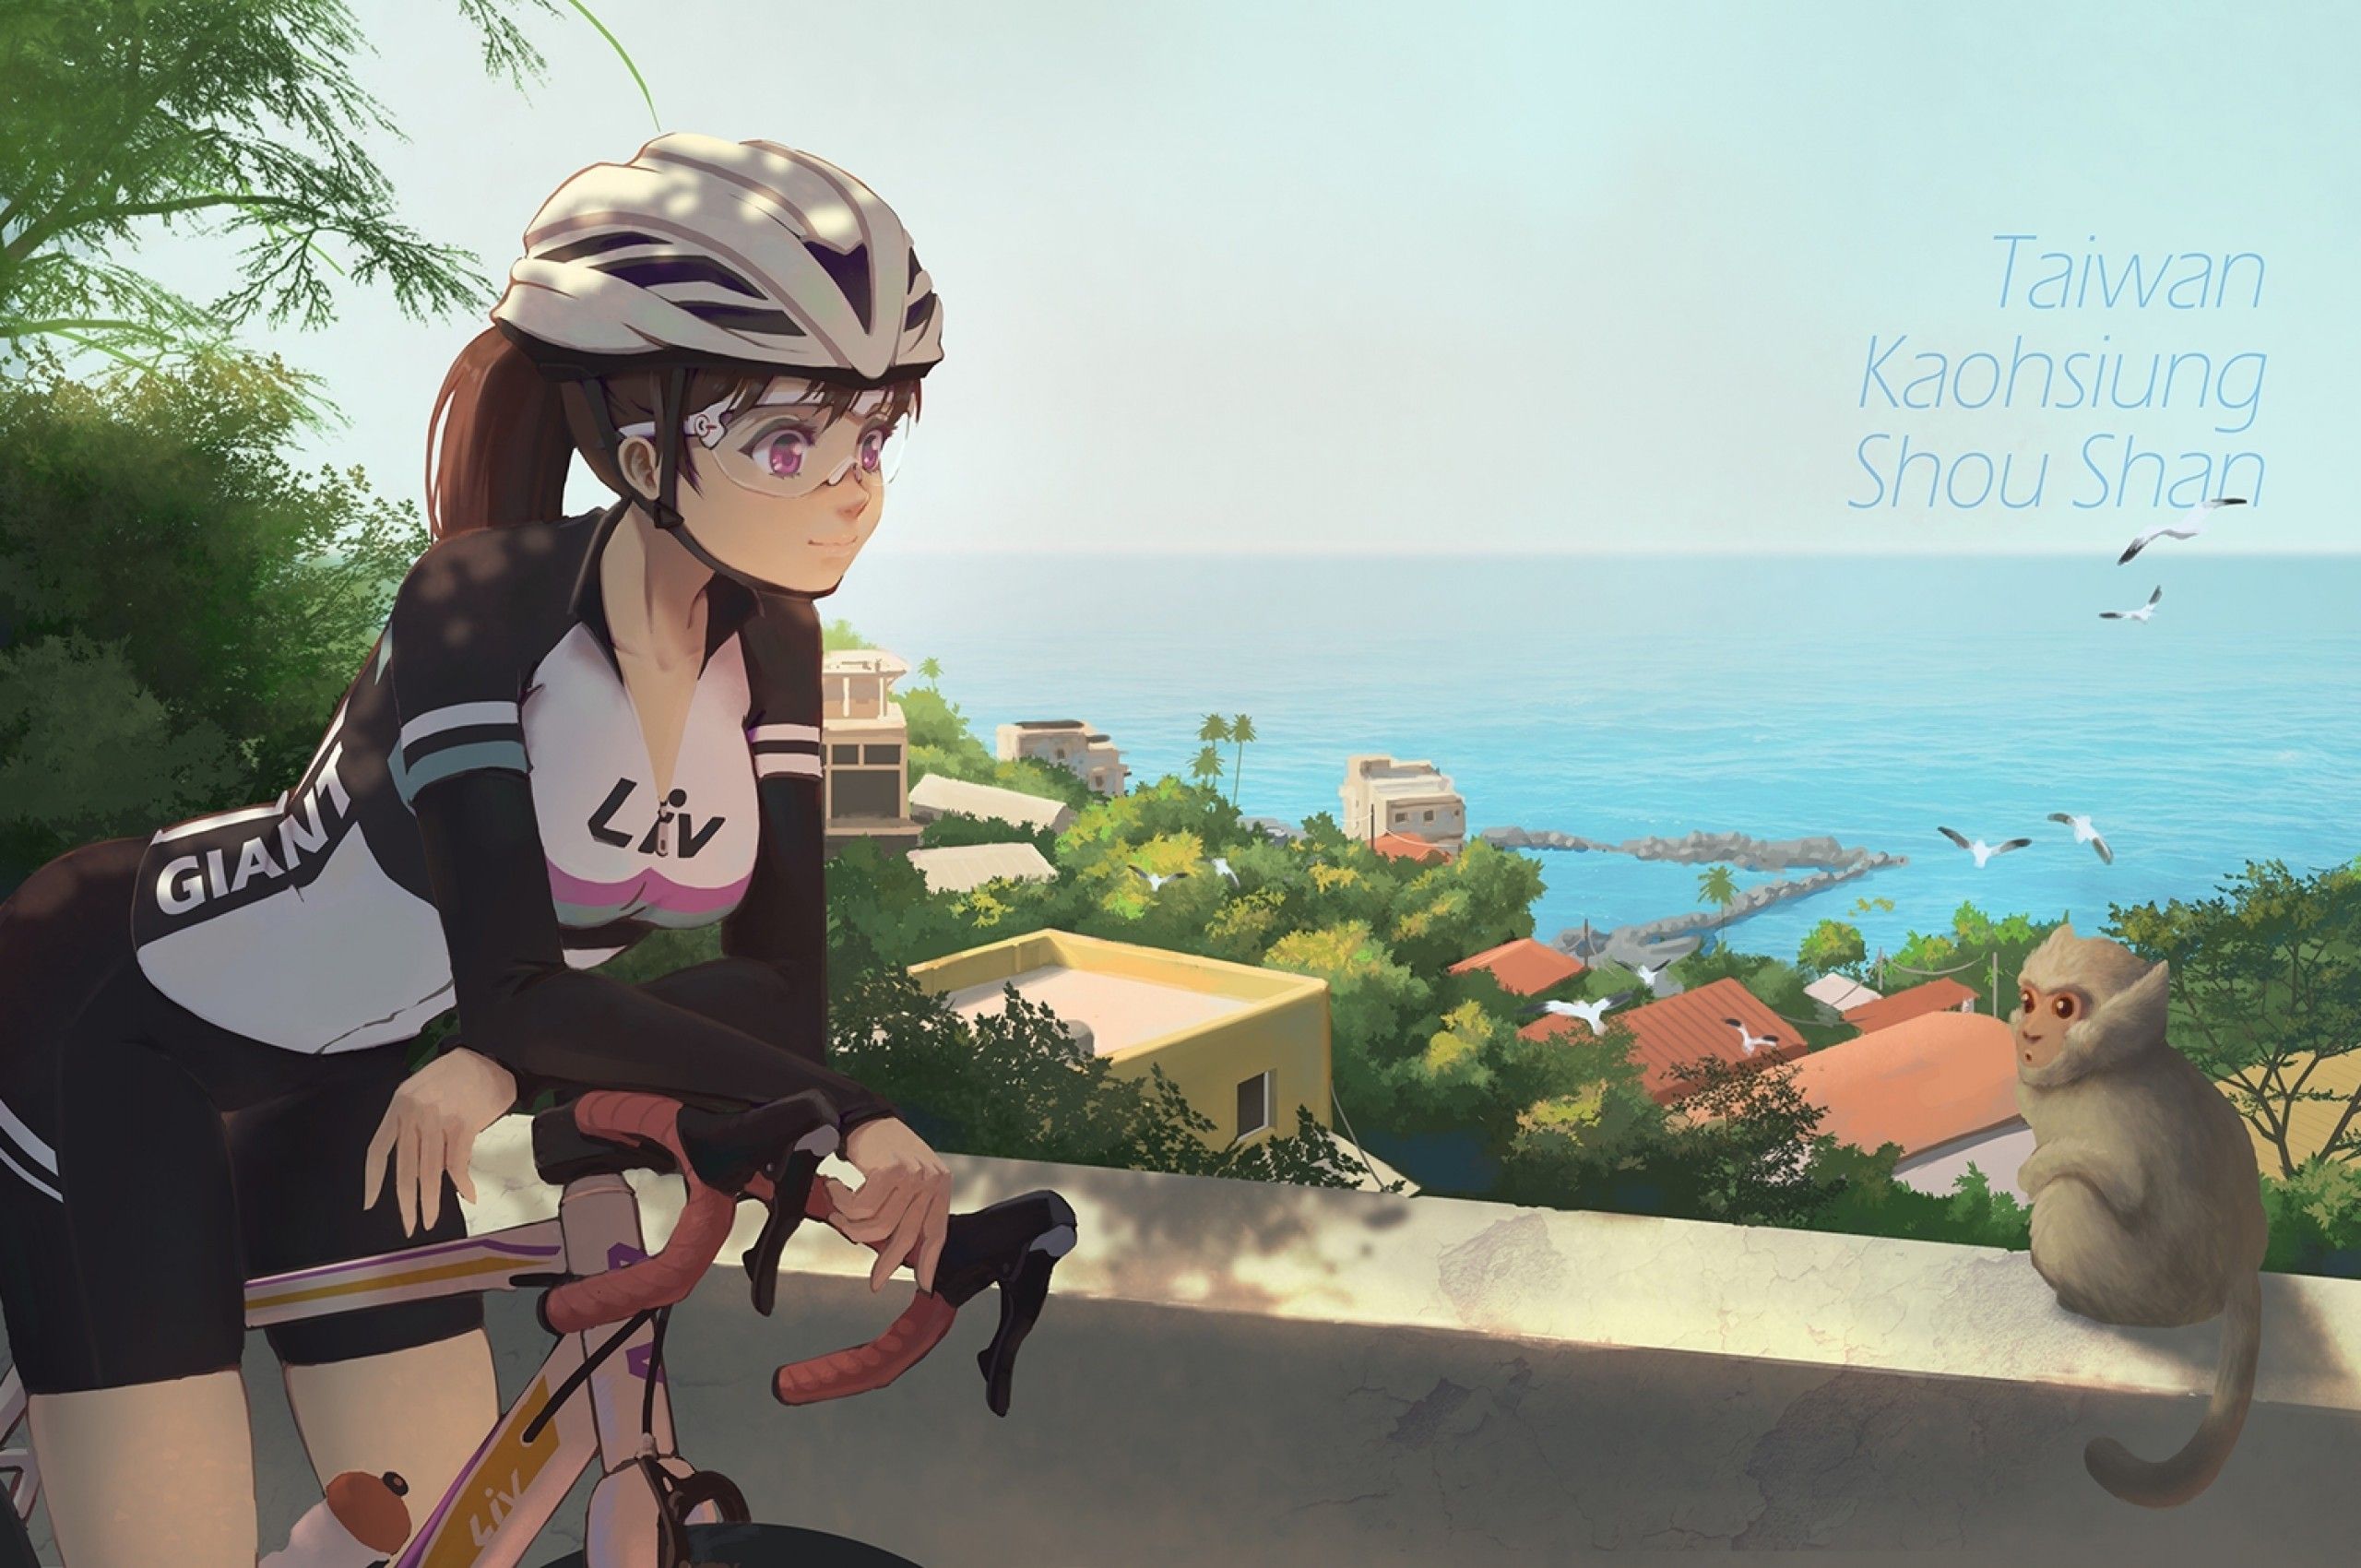 Flower Dances With Bike | Riding Anime Girls Wiki | Fandom